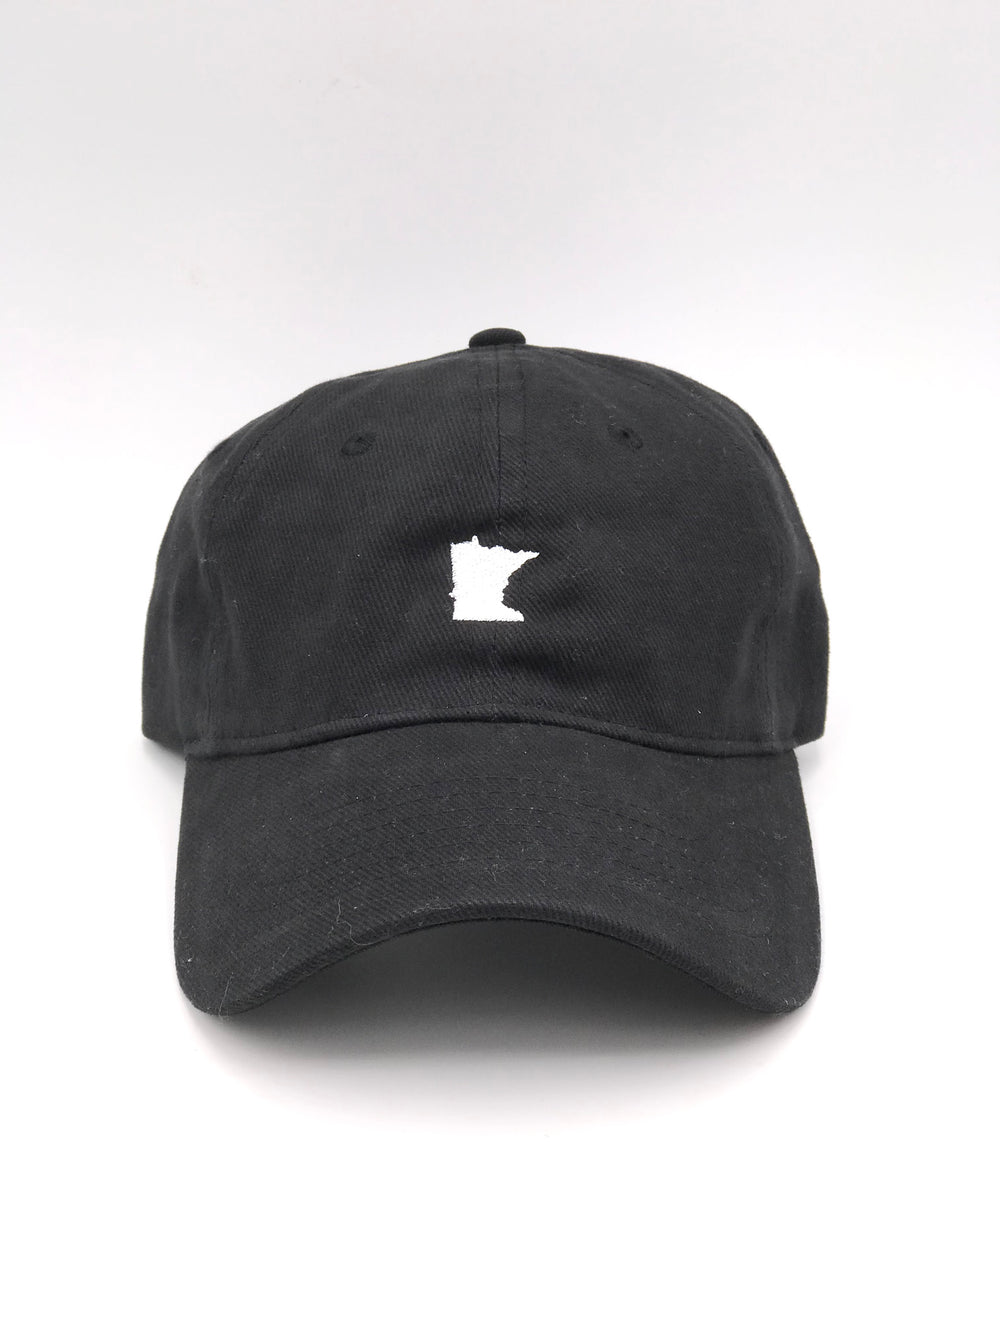 Black MN hat 